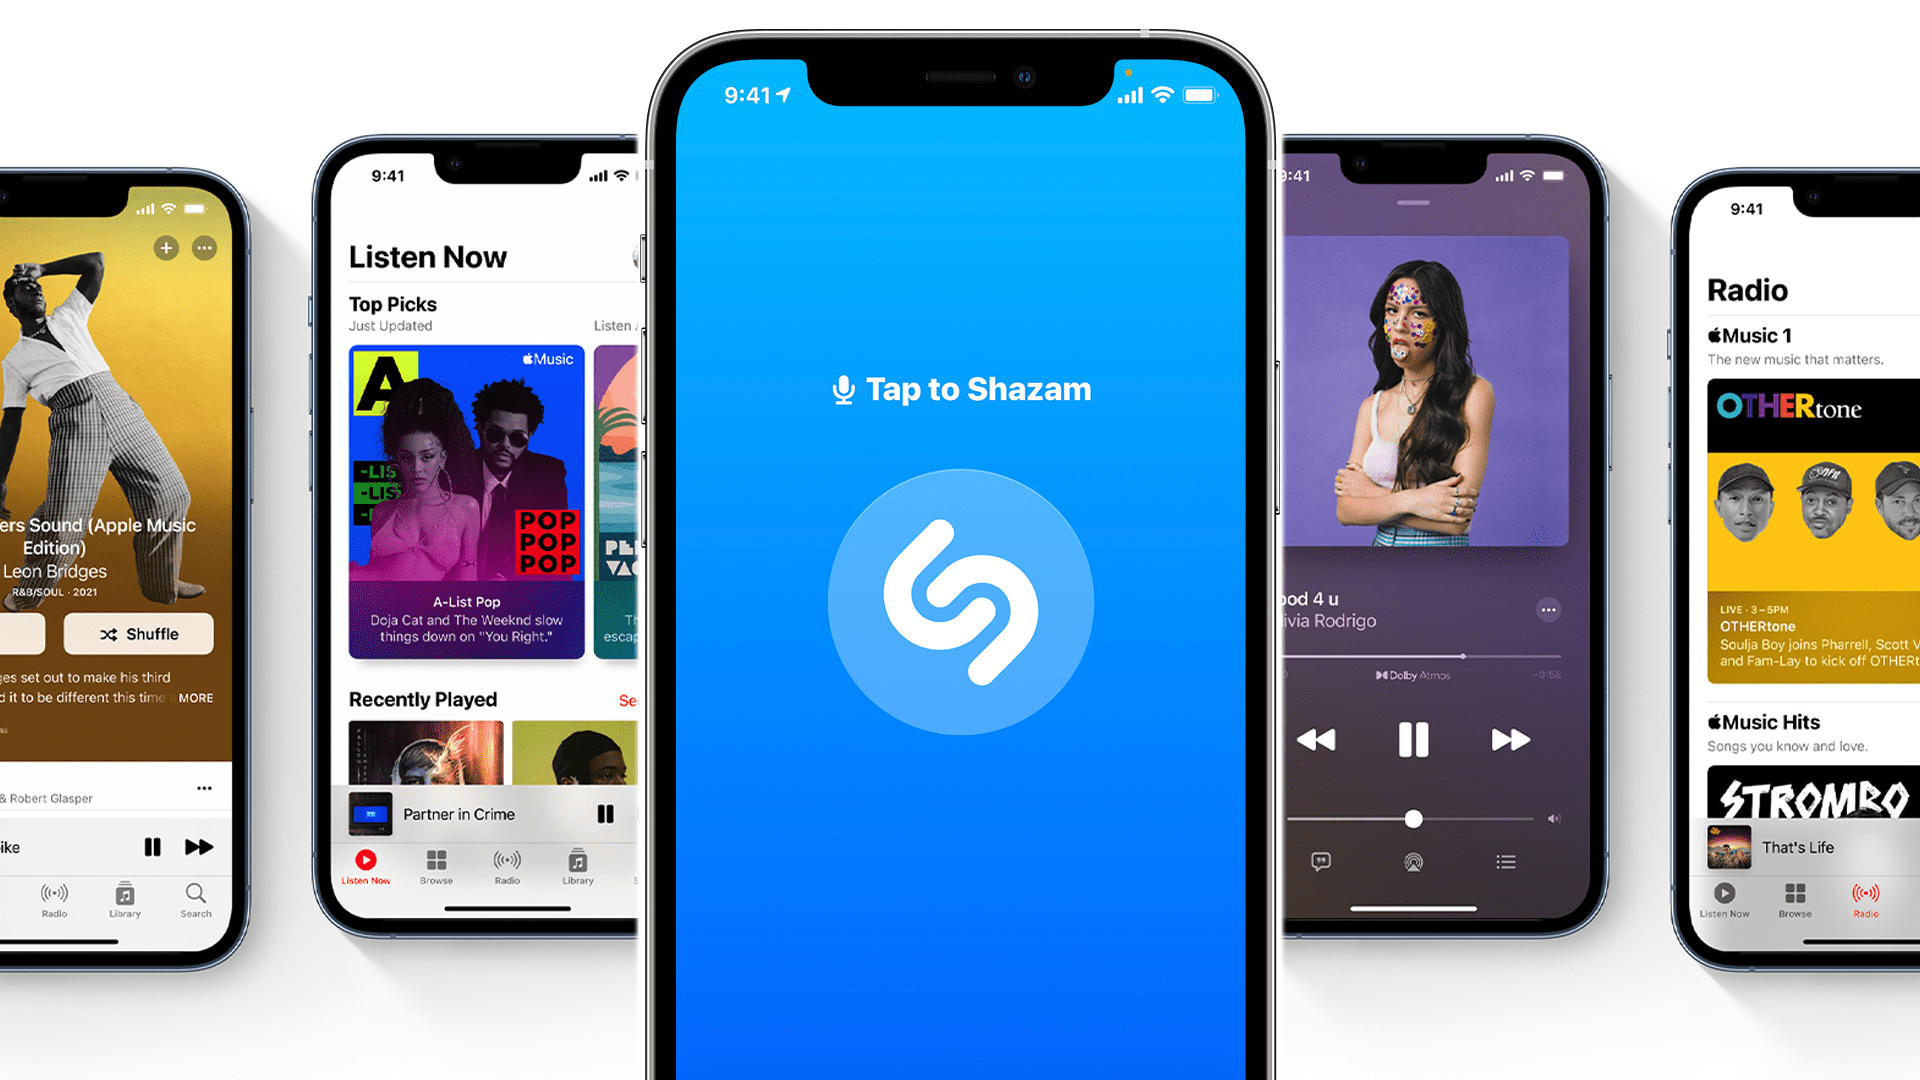 Ladda ner Shazam och få Apple Music gratis (även om du prenumererar!)